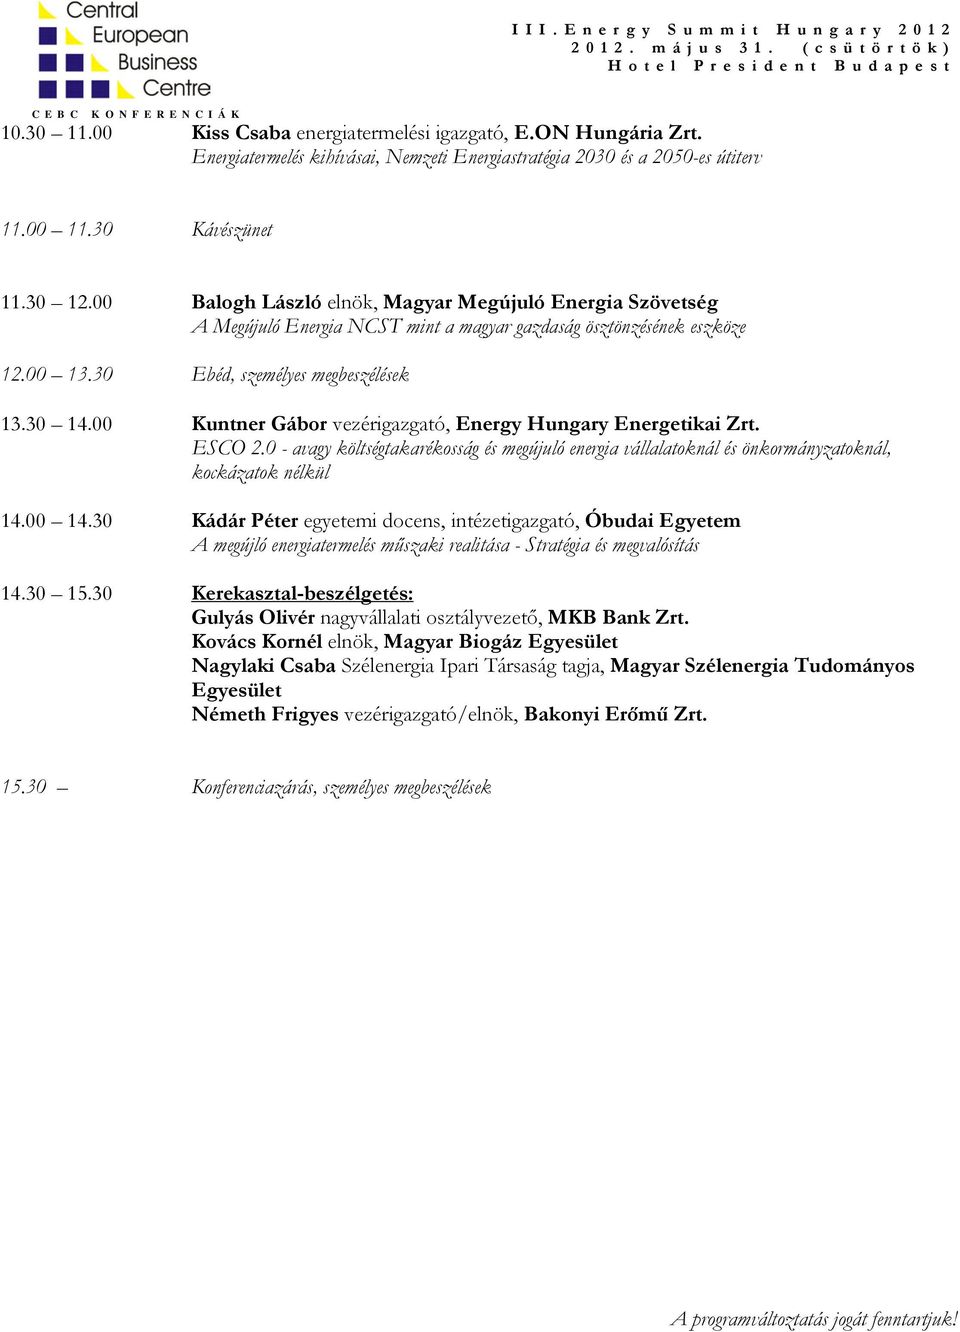 00 Kuntner Gábor vezérigazgató, Energy Hungary Energetikai Zrt. ESCO 2.0 - avagy költségtakarékosság és megújuló energia vállalatoknál és önkormányzatoknál, kockázatok nélkül 14.00 14.